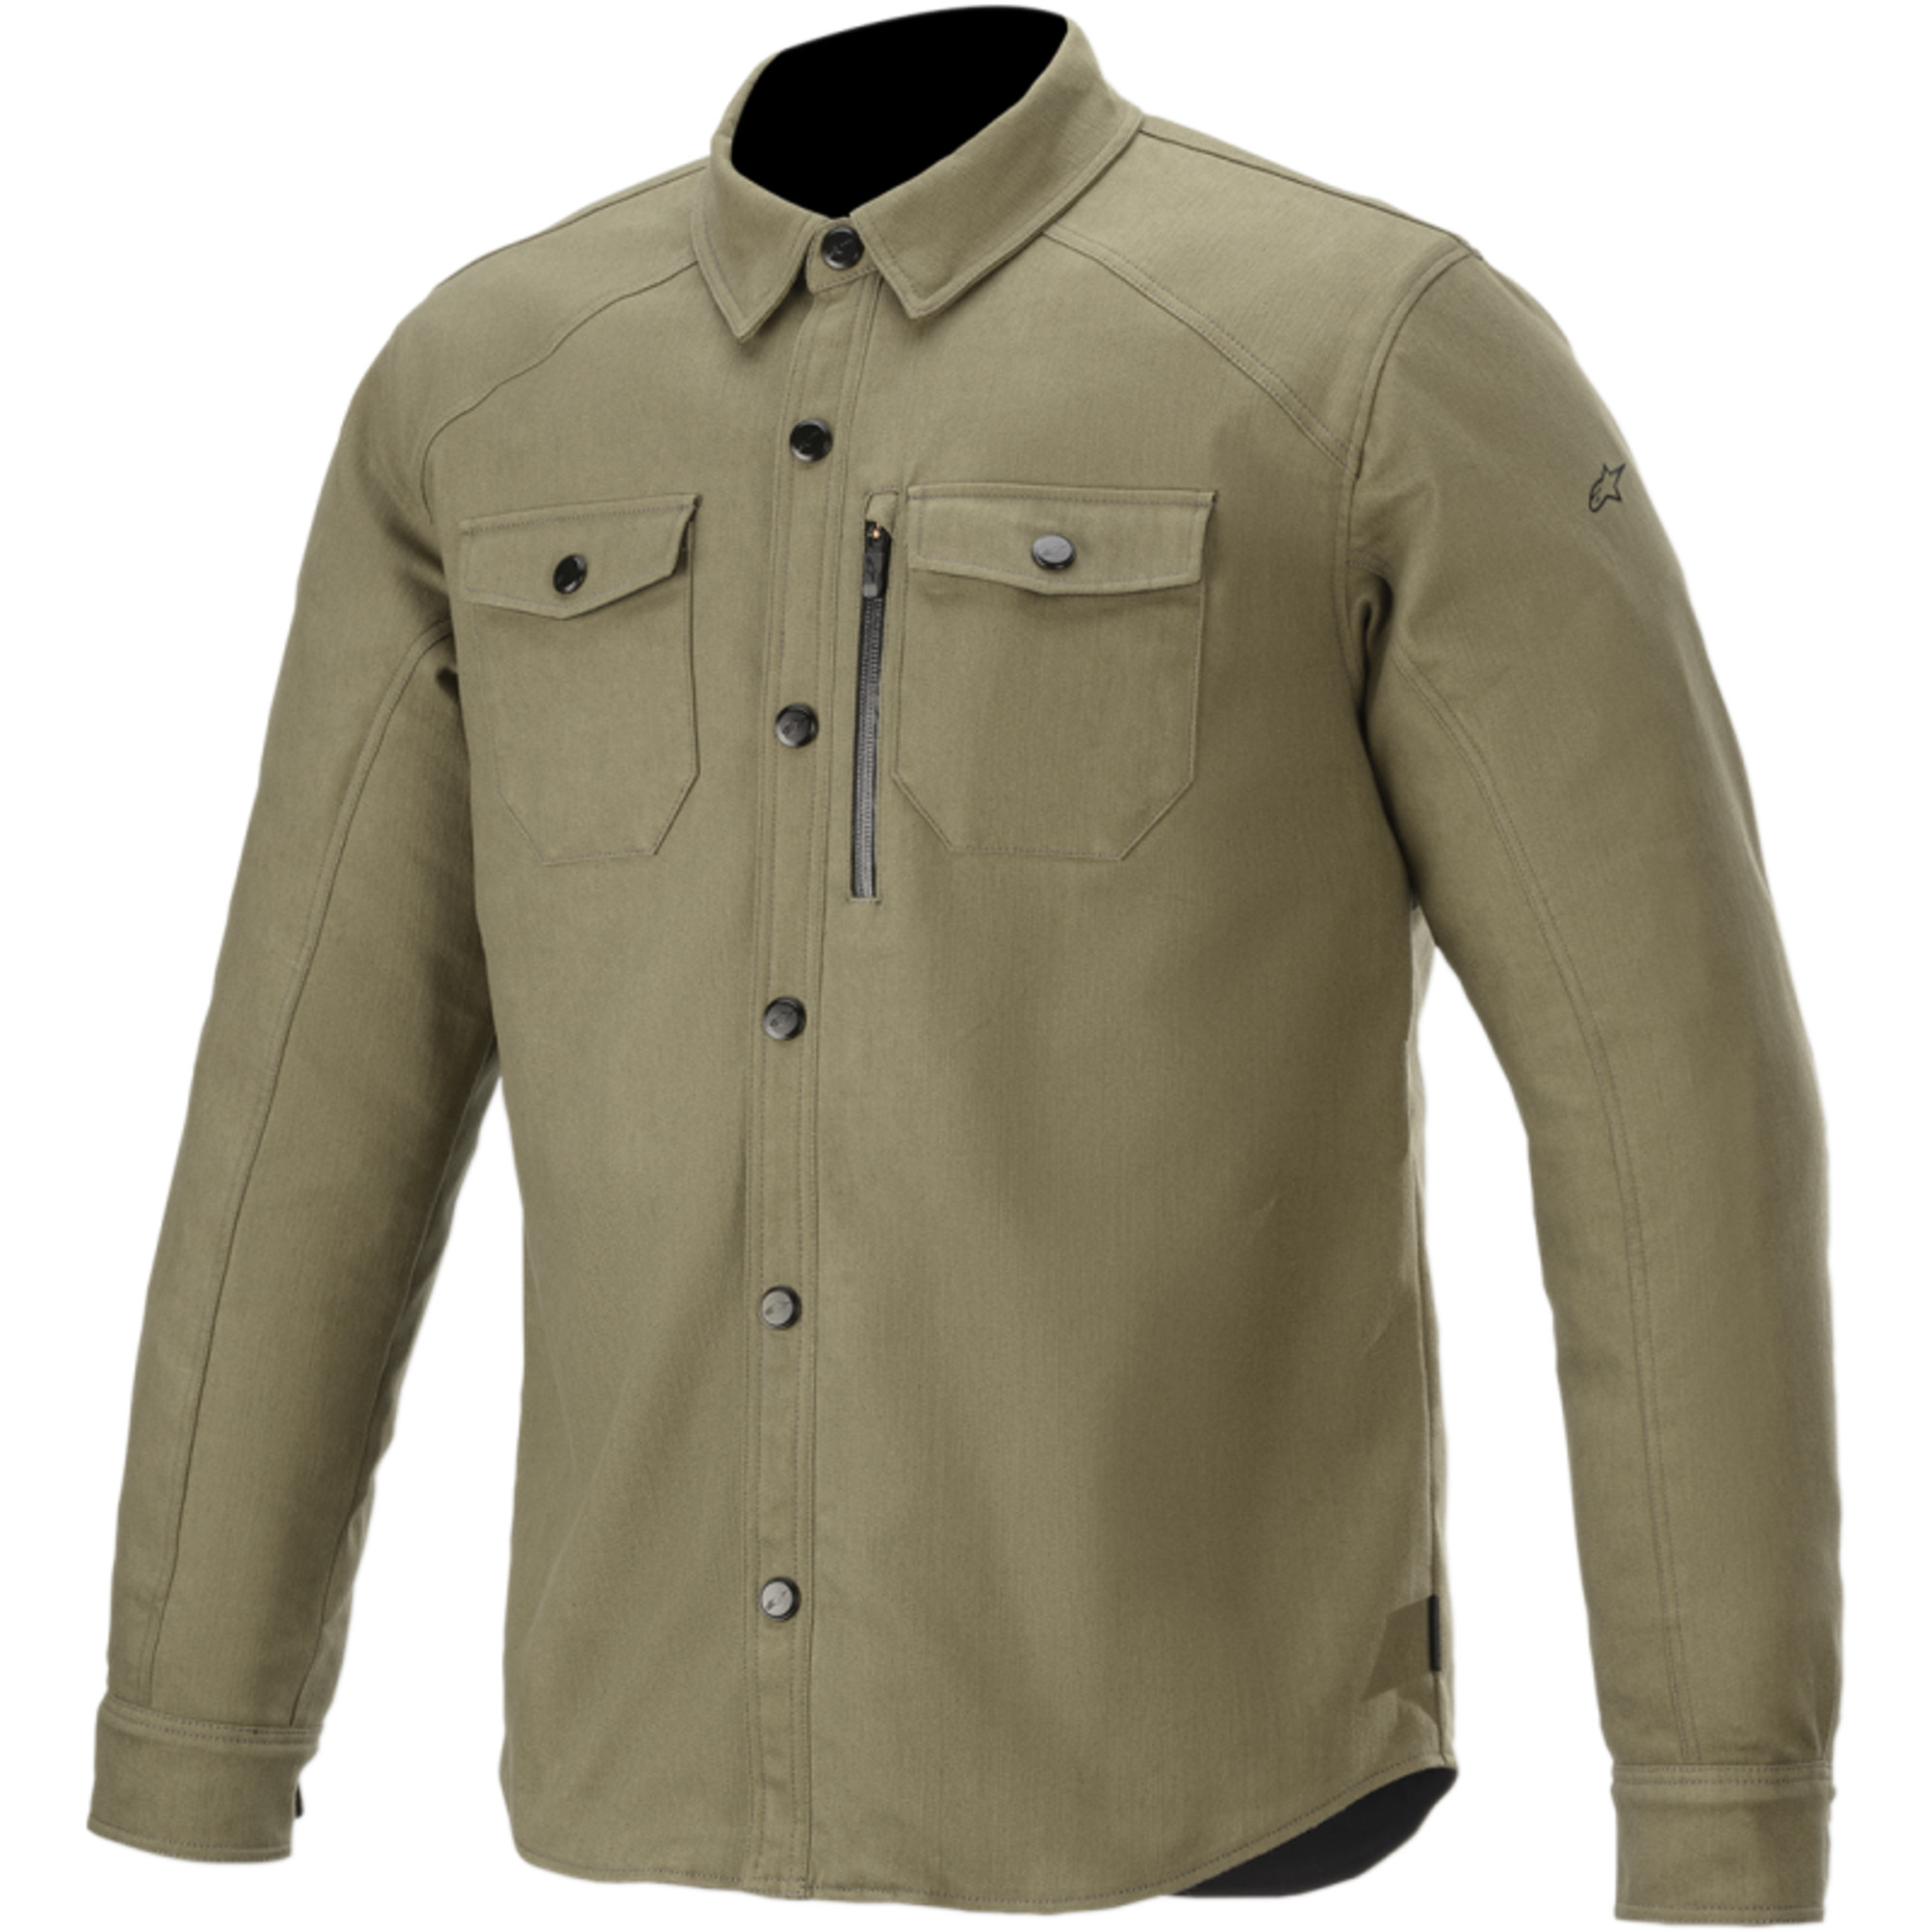 alpinestars textile jackets for men newman shirt